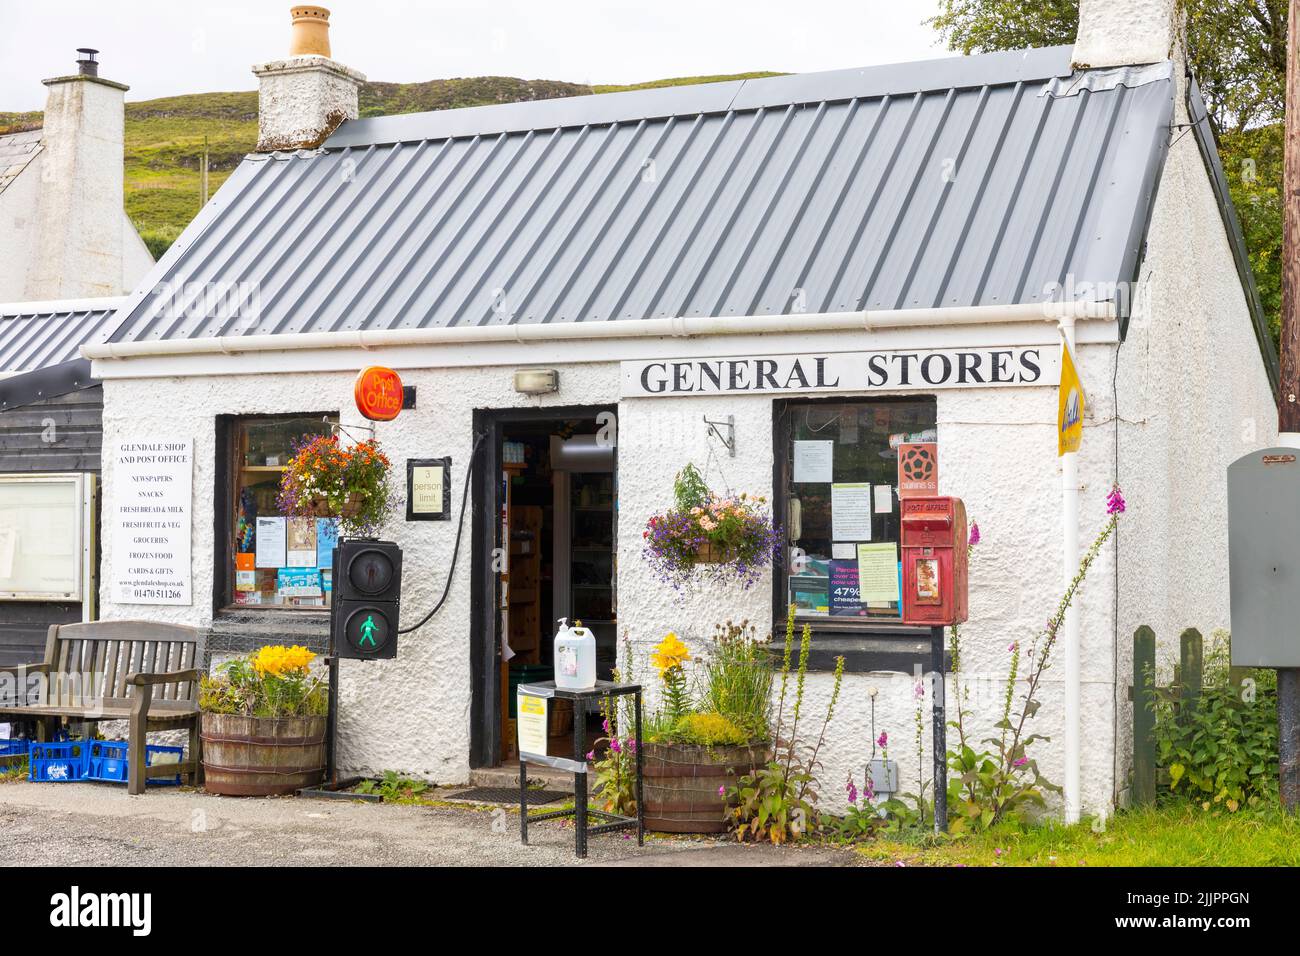 Glendale magasins généraux et immeuble de bureaux de poste , dans cette propriété communautaire de Glendale sur la côte ouest de l'île de Skye, Écosse, Royaume-Uni Banque D'Images